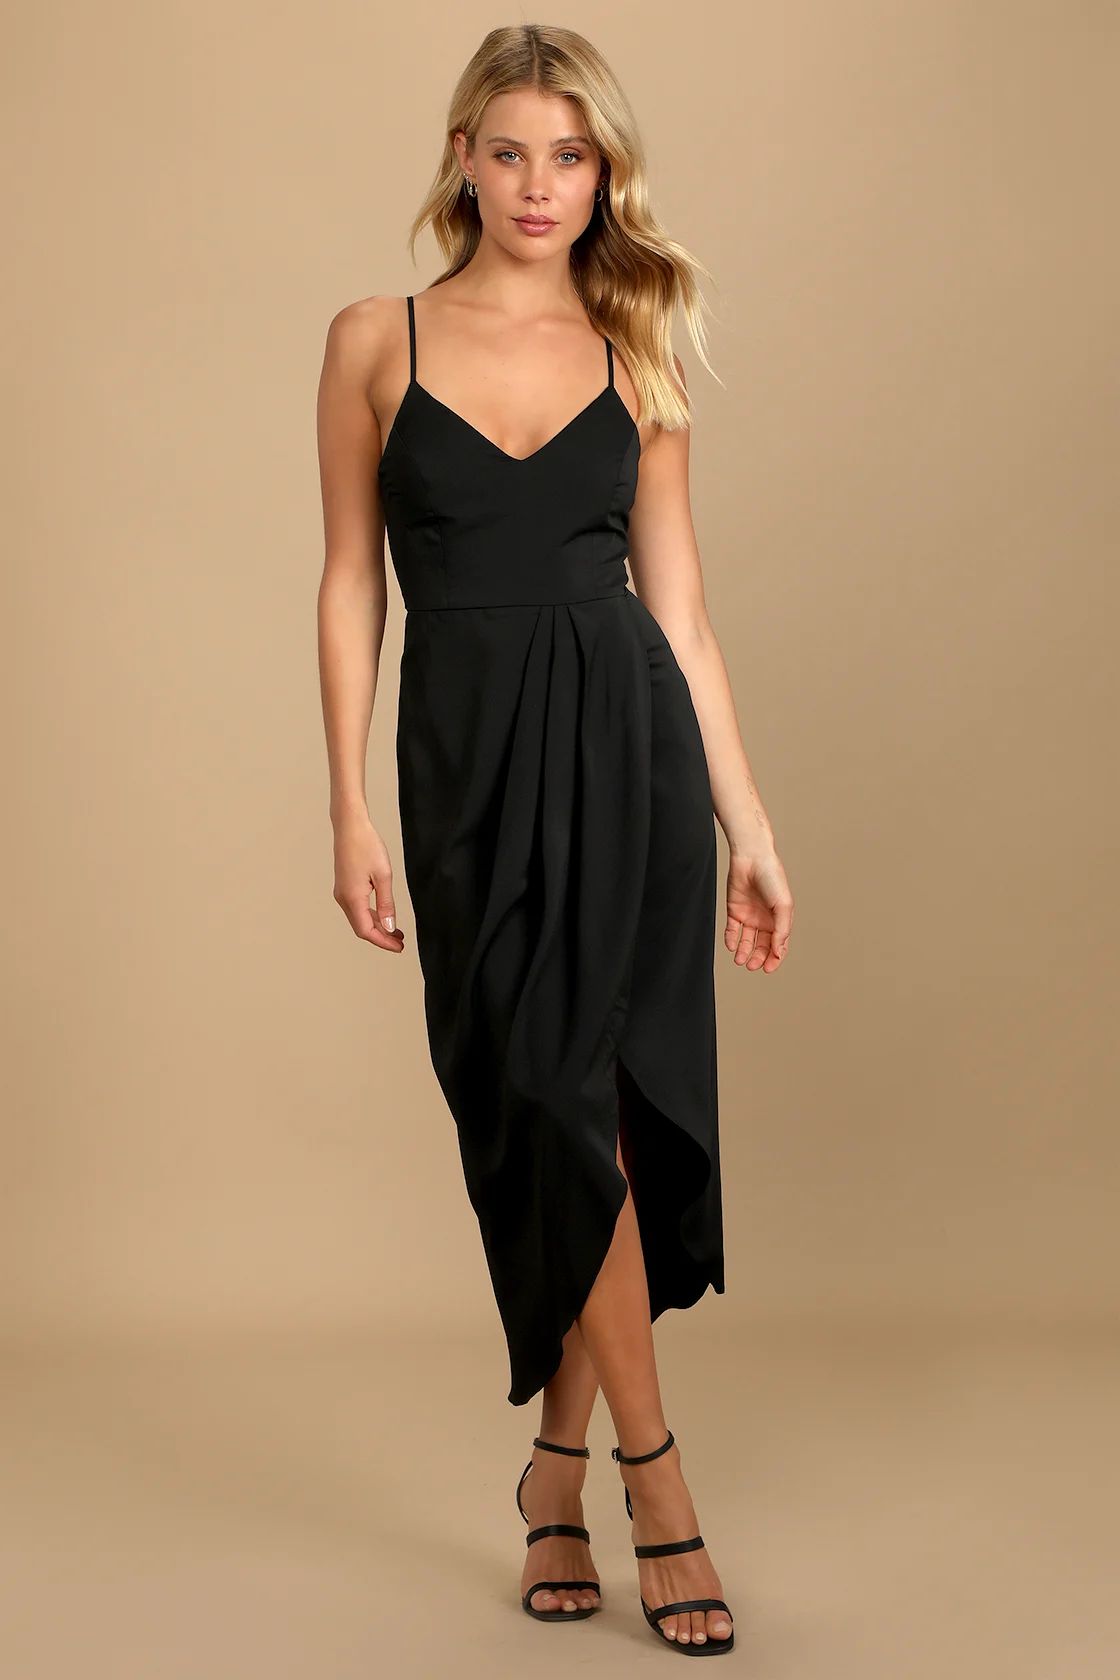 Reinette Black Midi Dress | Lulus (US)